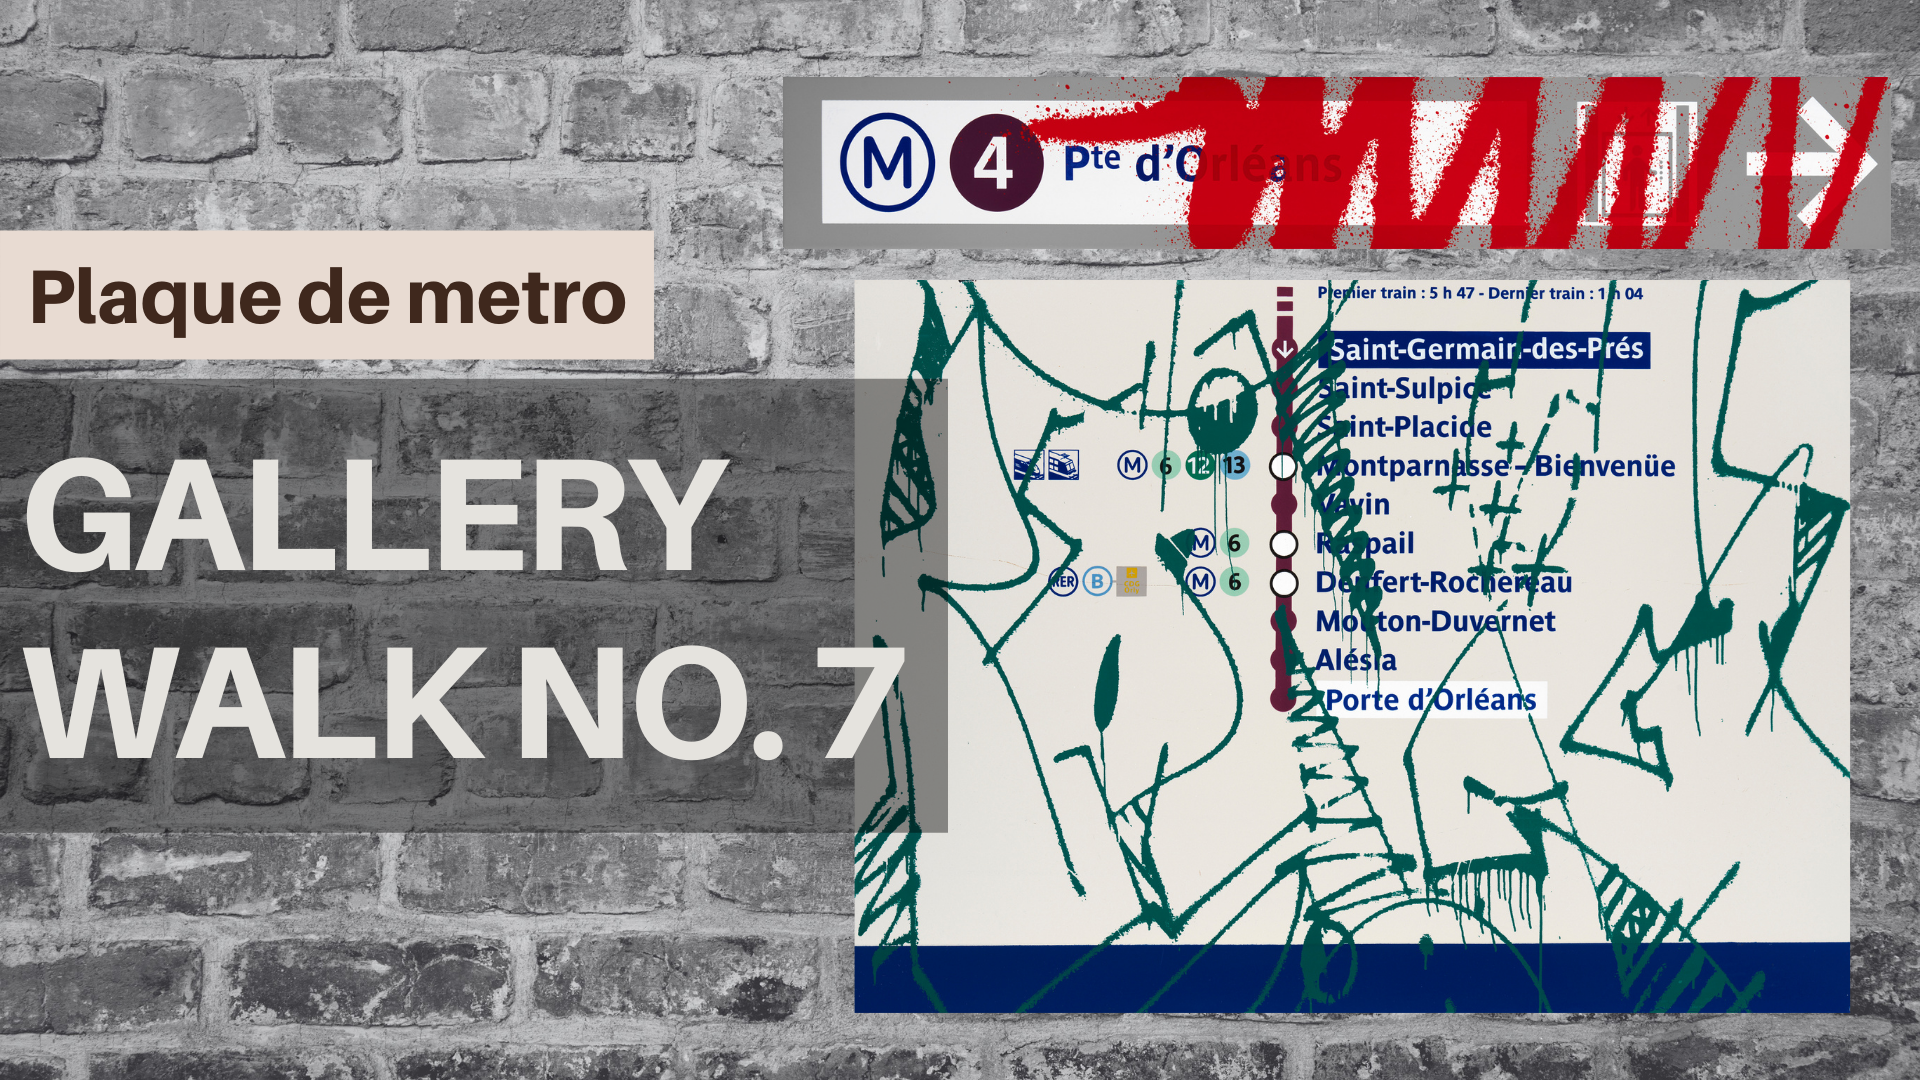 Gallery Walk No.7: PLAQUE DE METRO